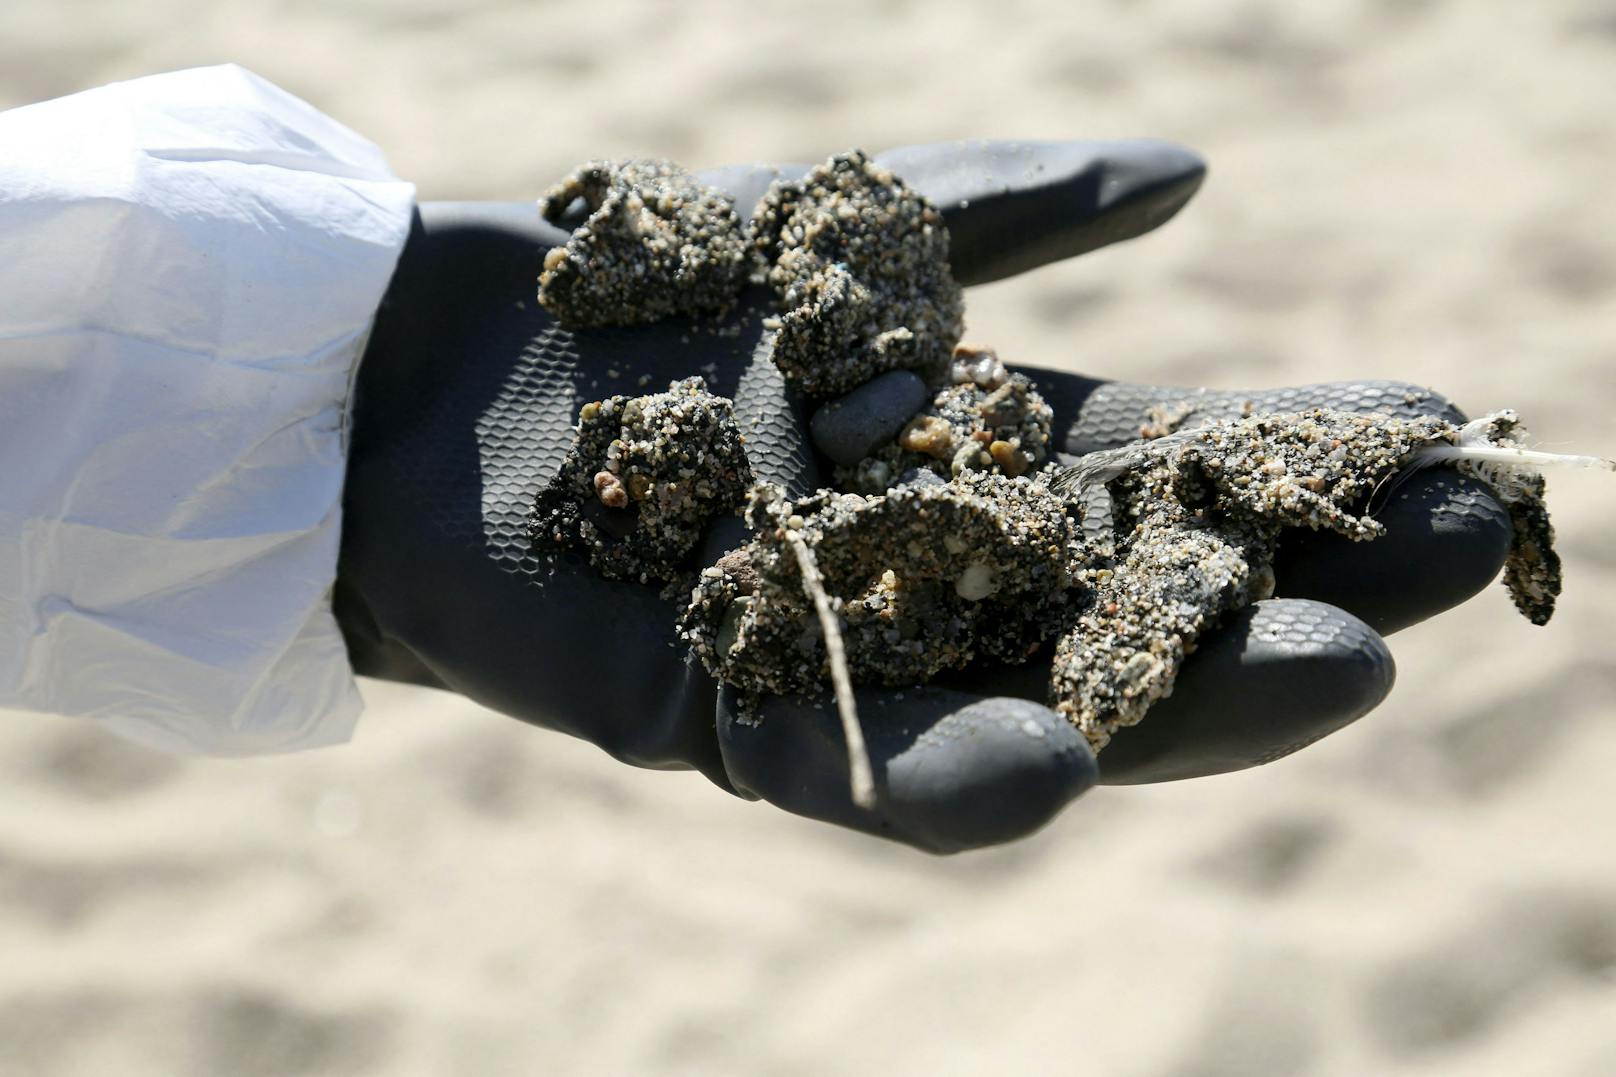 Einsatzkräfte reinigen Strand und Meer von einer Verseuchung durch mutmaßlich illegal abgelassenes Öl vor der Küste von Korsika (14. Juni 2021).